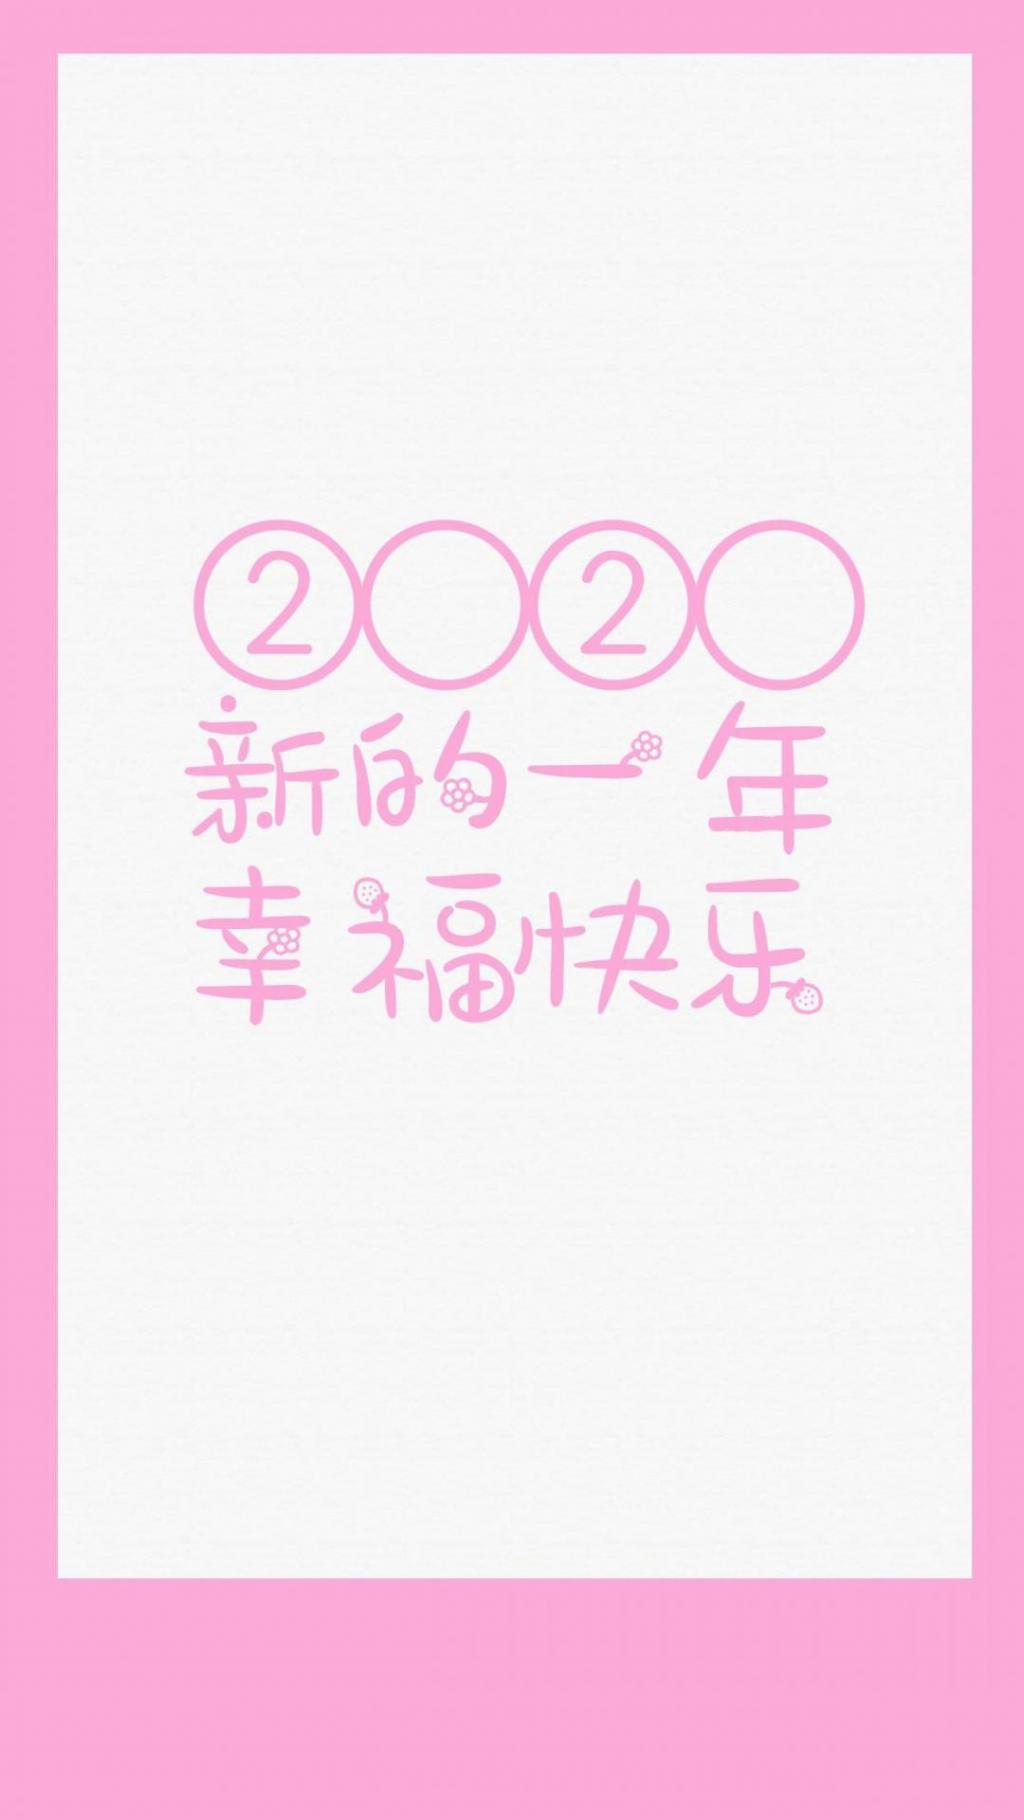 2020新的一年幸福快乐手机壁纸